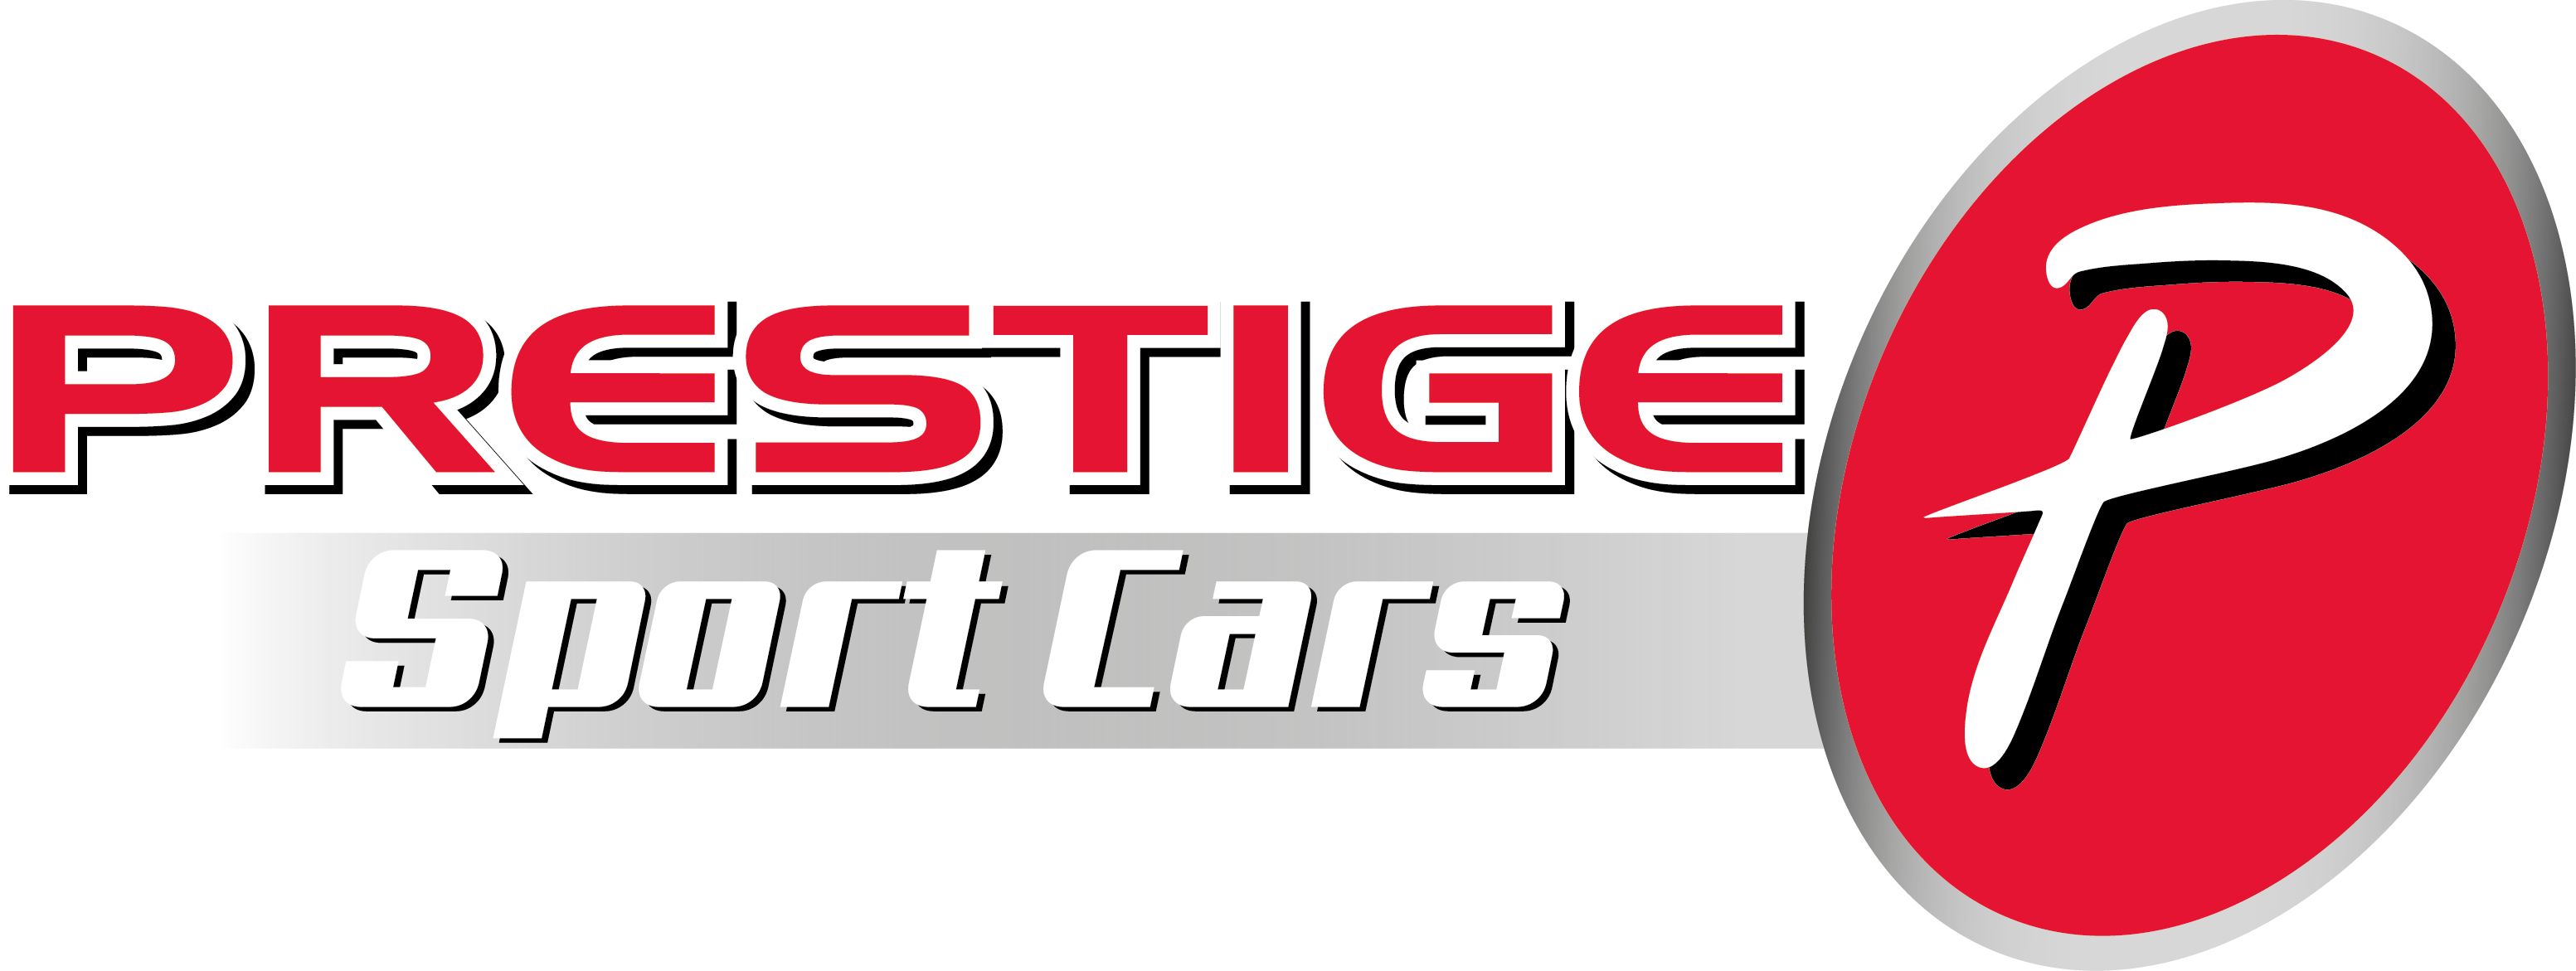 Prestige Sports Cars